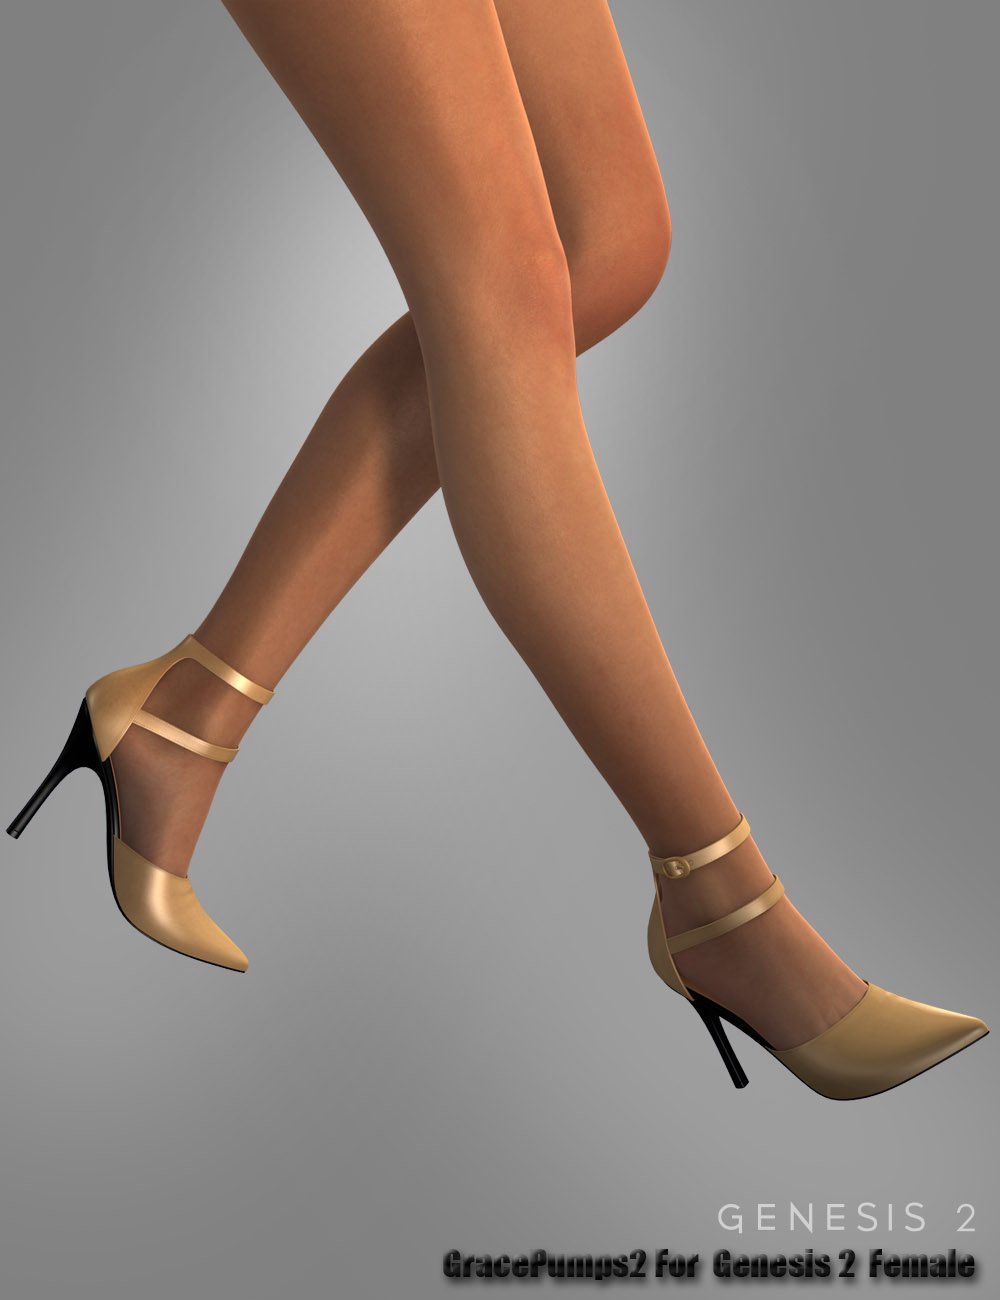 Grace Pumps 2 For Genesis 2 Female(s) by: dx30, 3D Models by Daz 3D